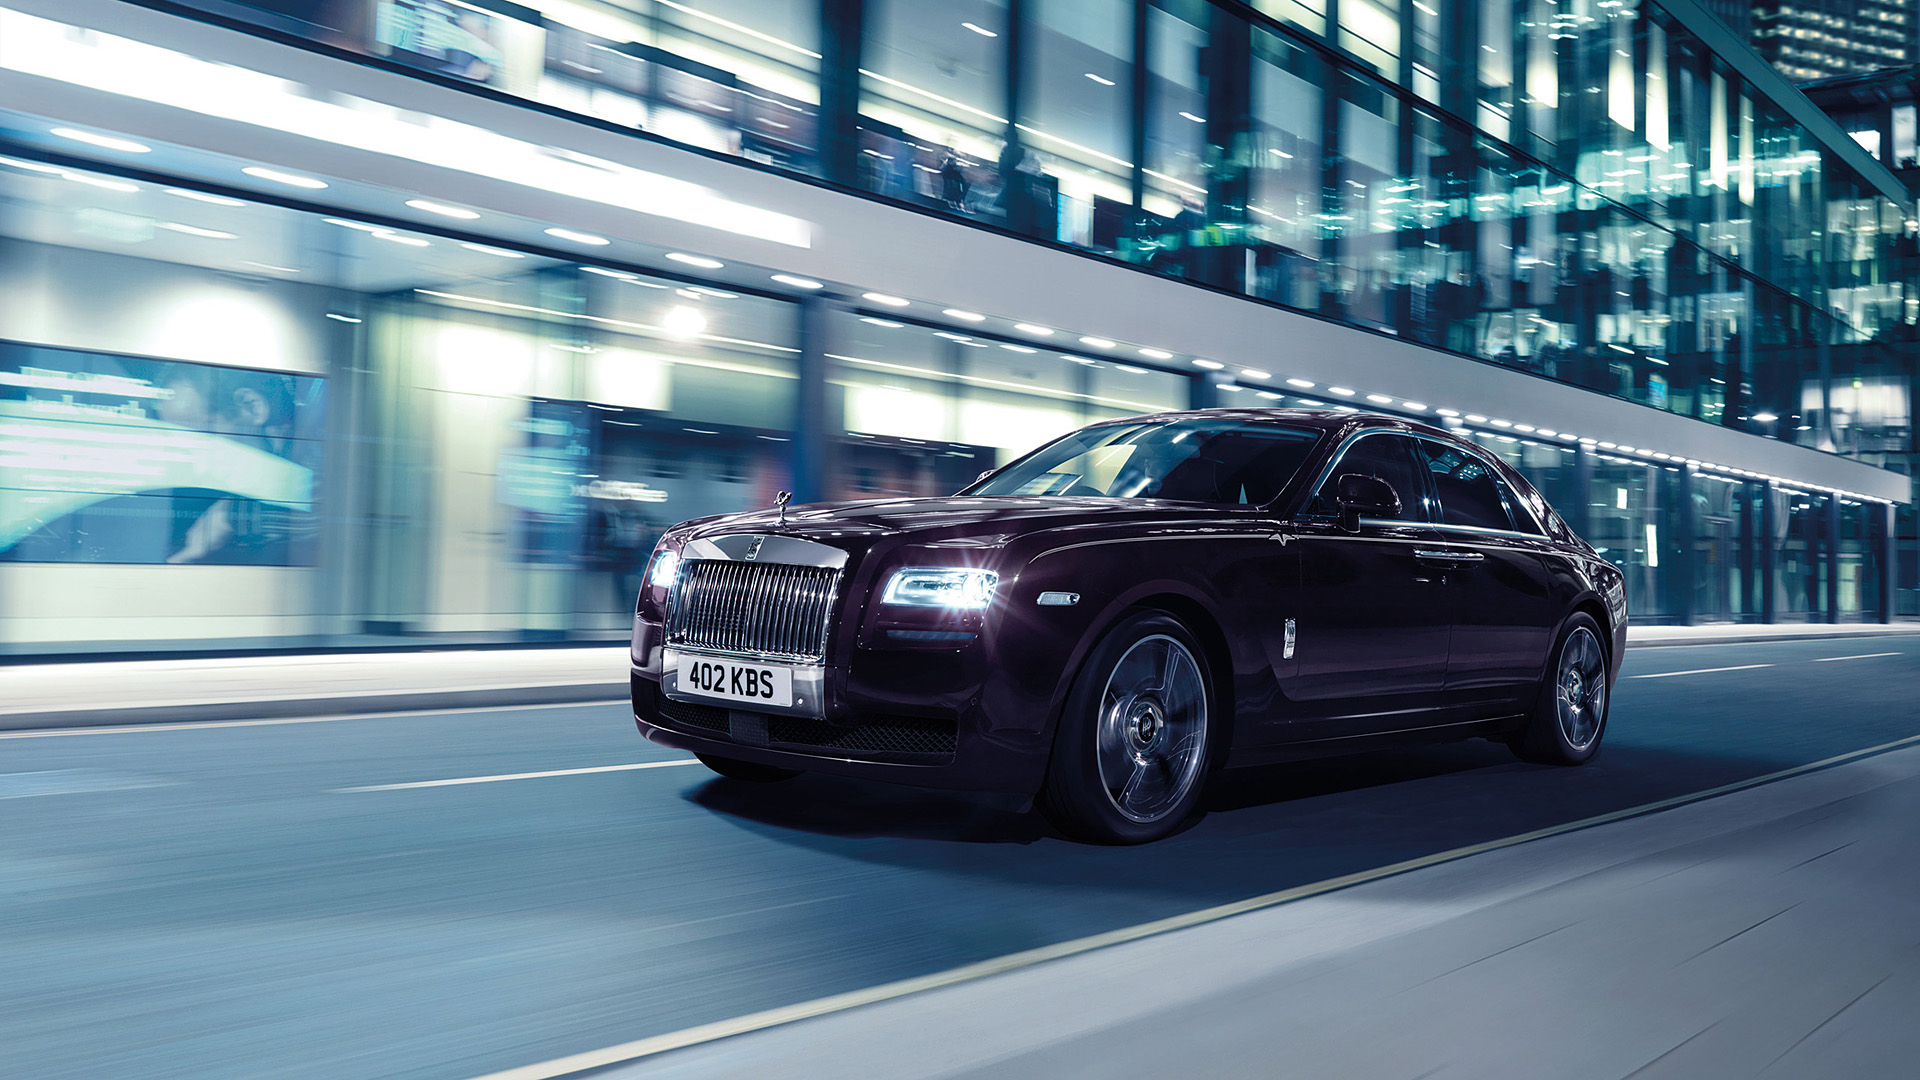  2015 Rolls-Royce Ghost V-Specification Wallpaper.